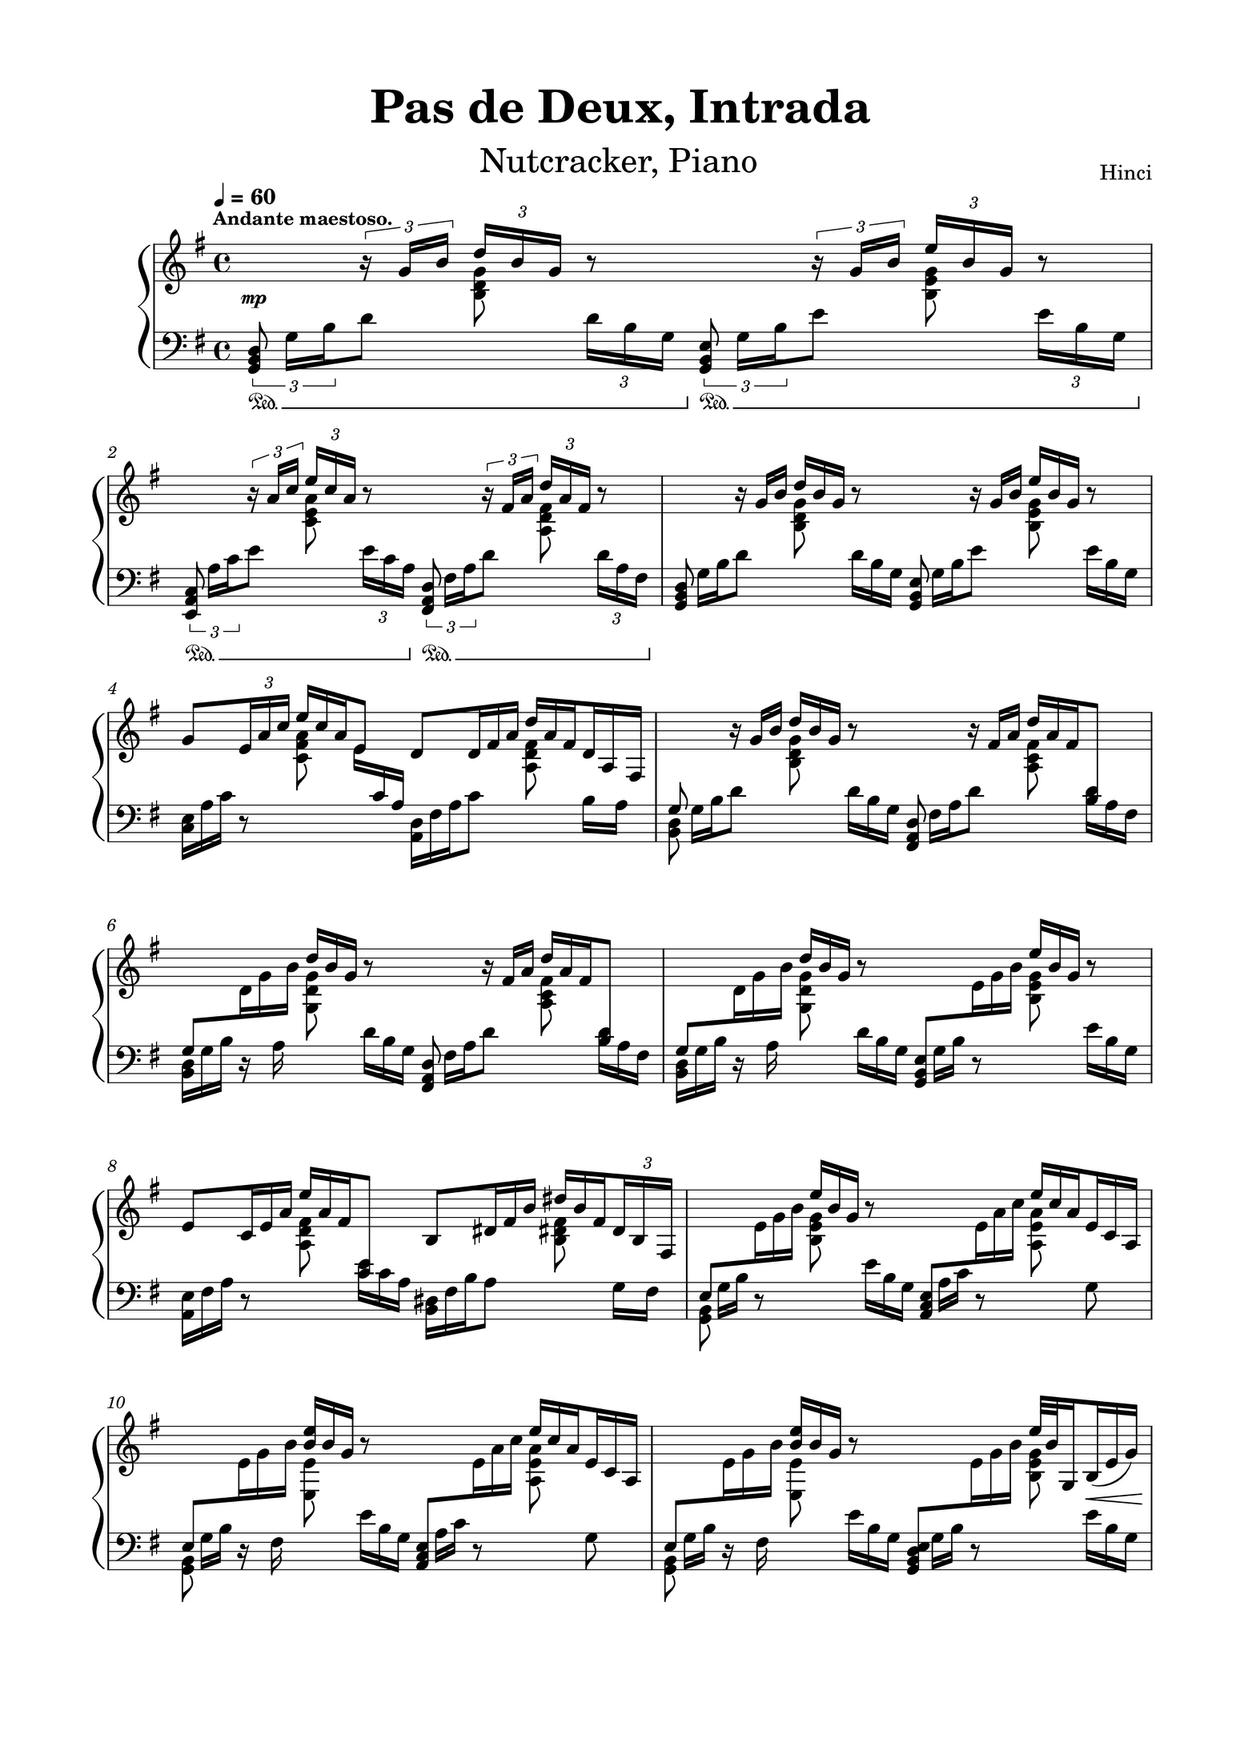 Tchaikovsky: The Nutcracker, Op. 71, Act II: No. 14a, Pas de deux. Andante maestoso Score